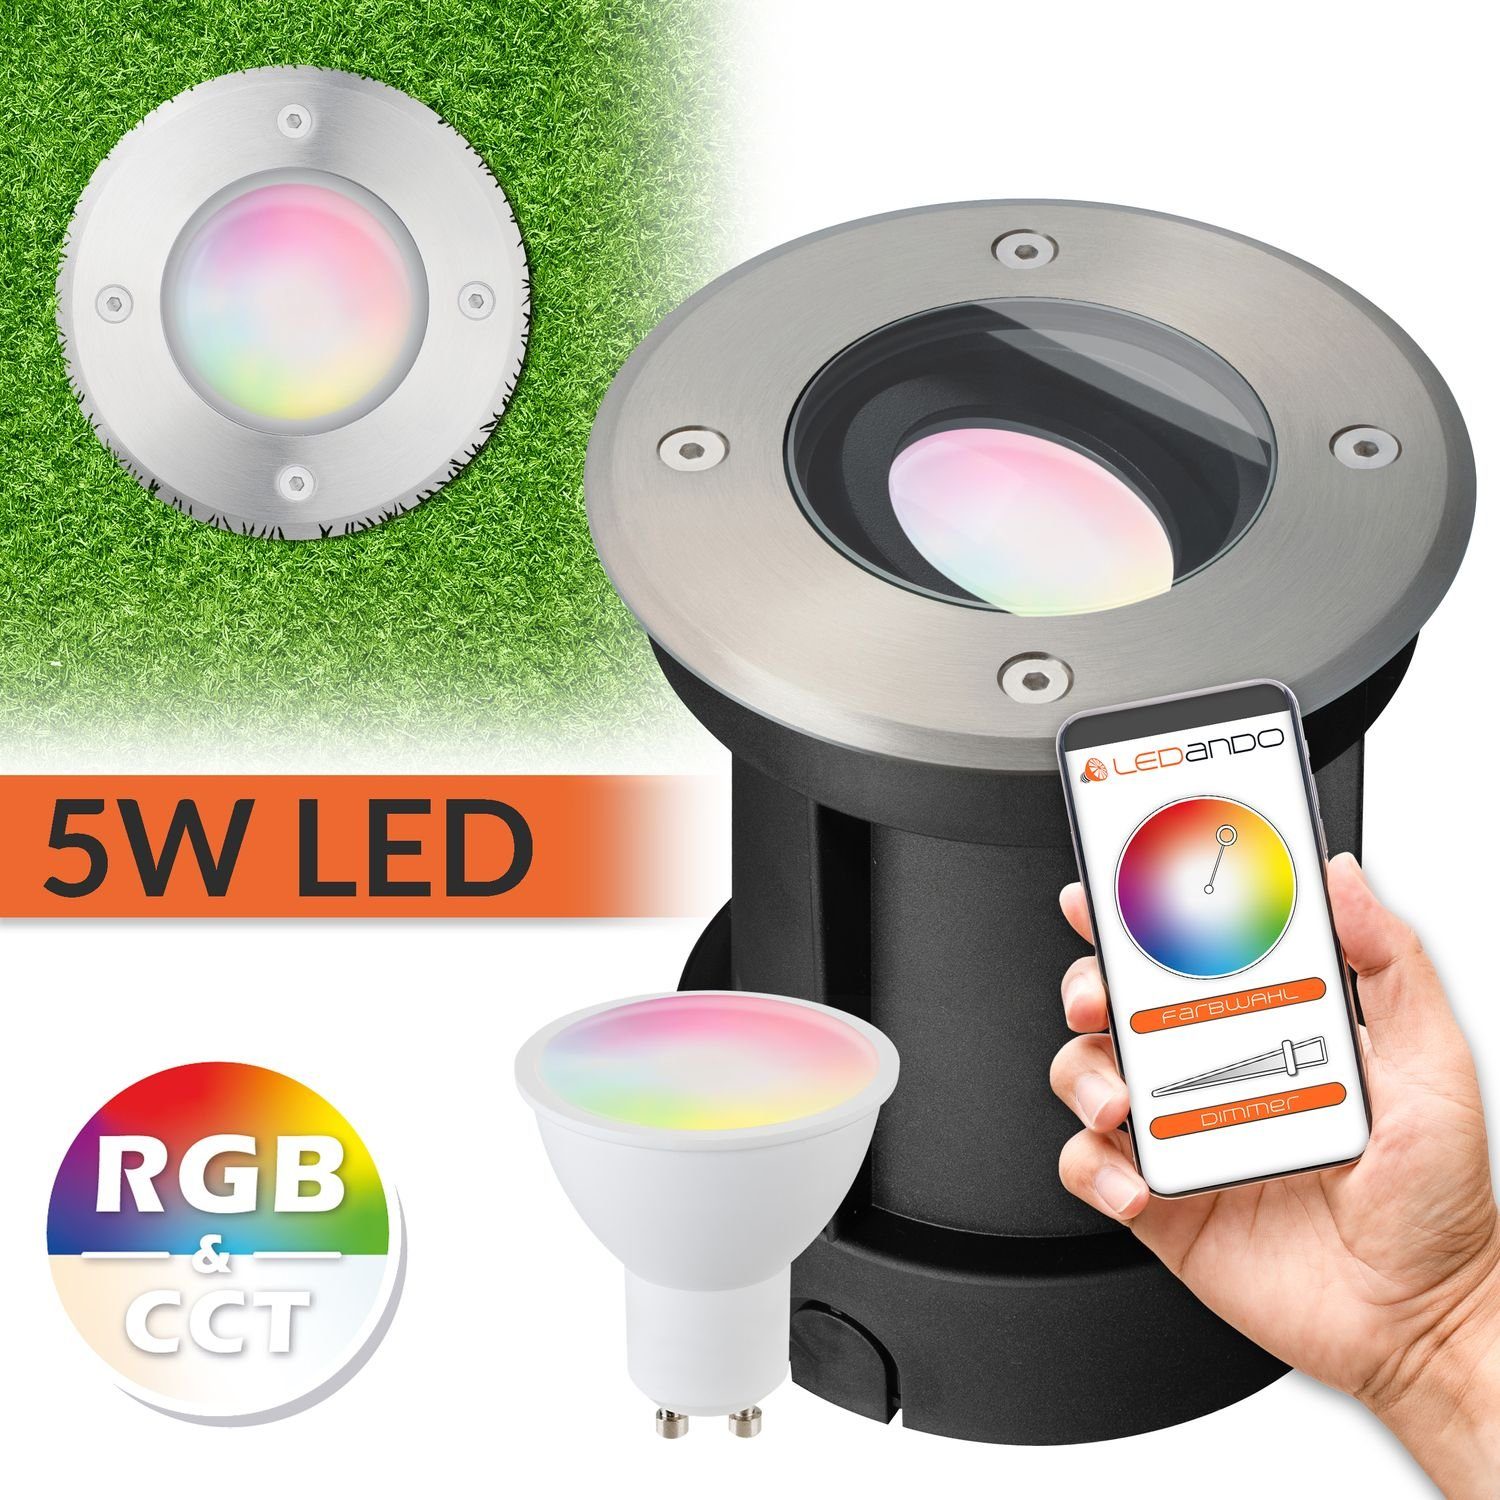 LEDANDO LED Einbaustrahler 5W WiFi LED Bodeneinbaustrahler Set - Smart per App steuerbar - RGB +